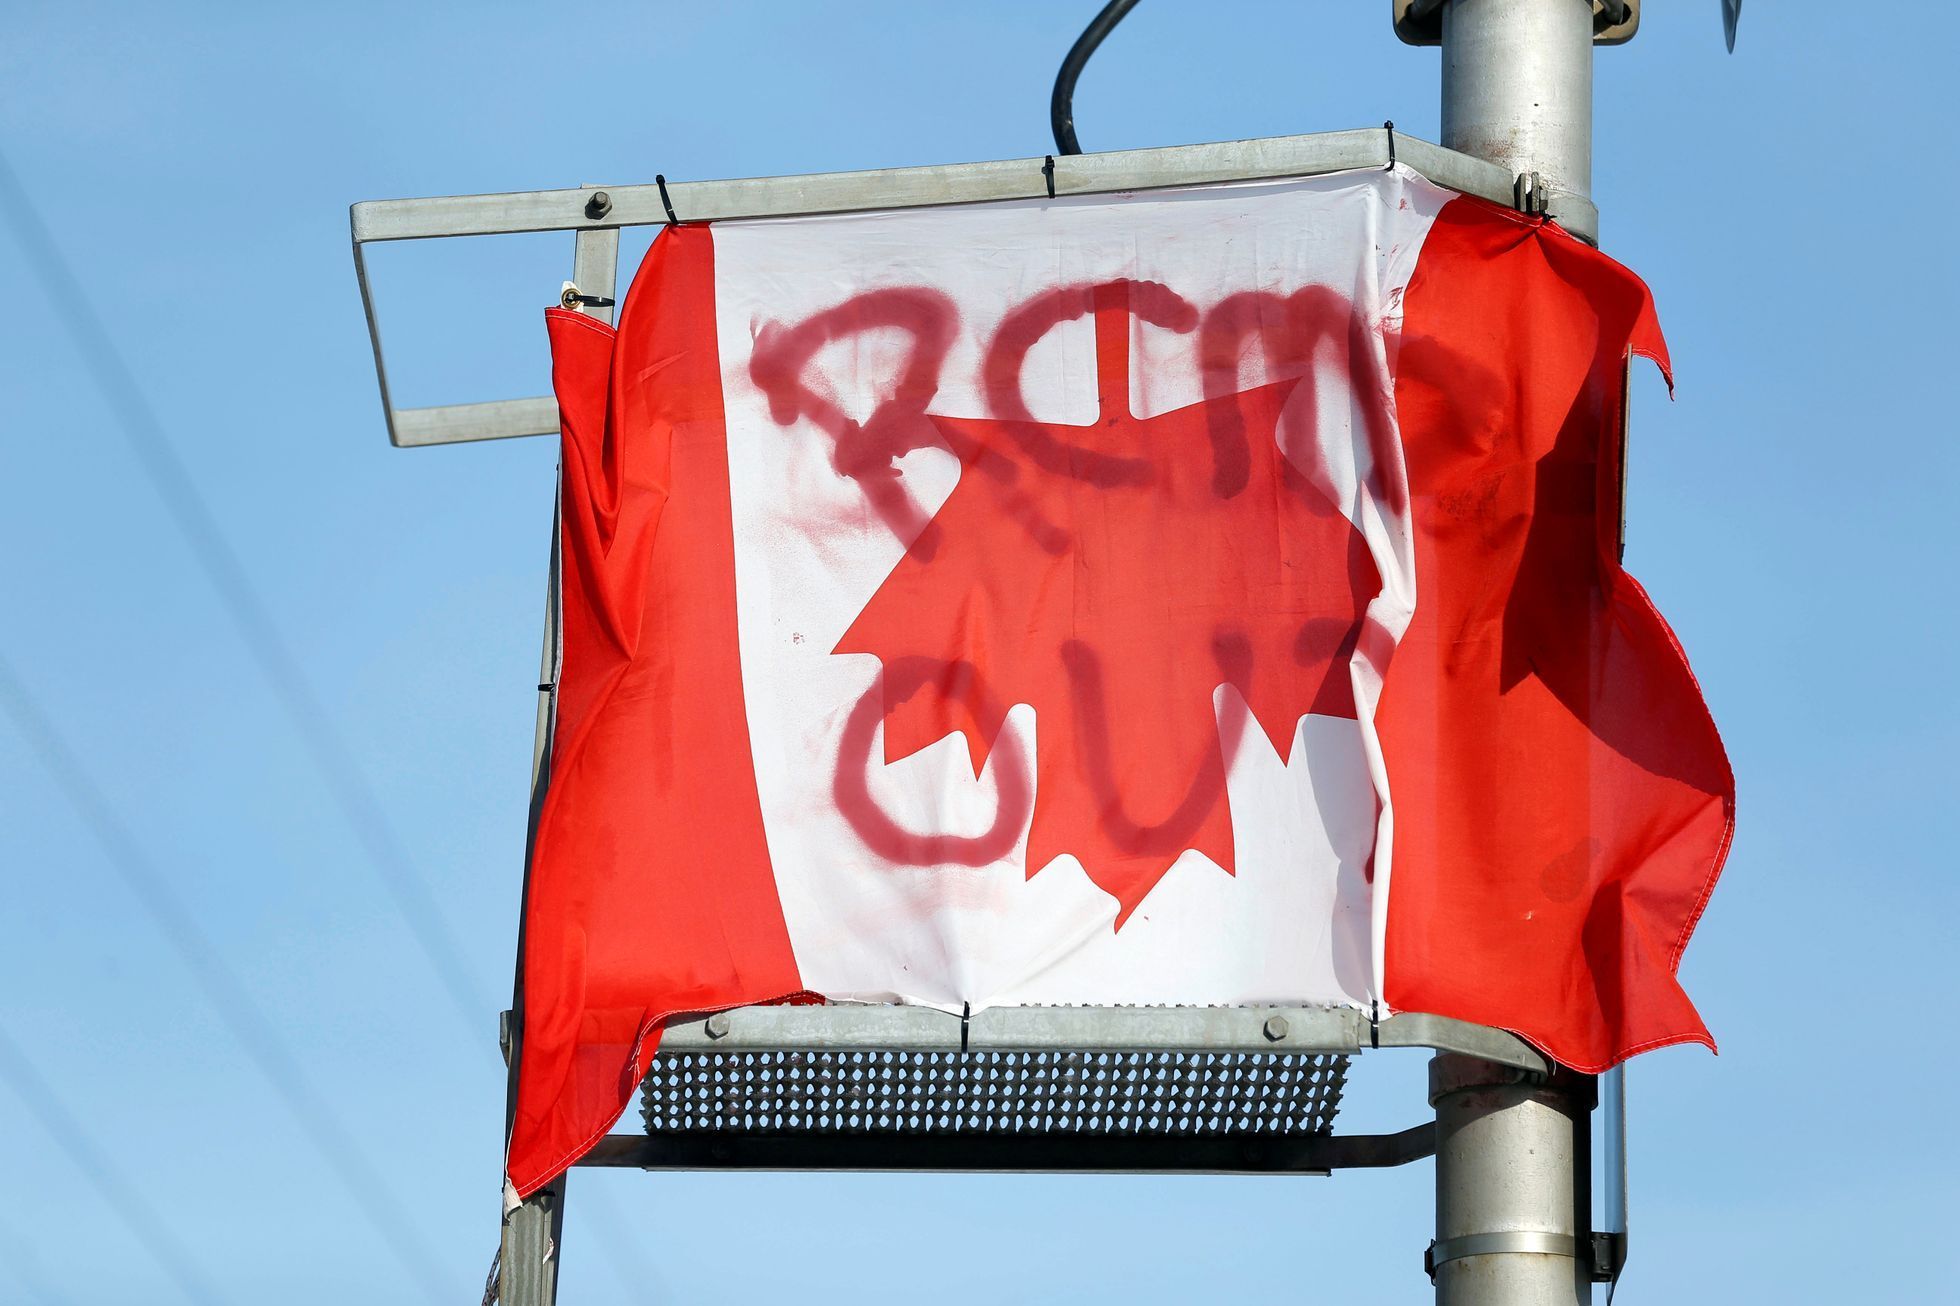 Obrazem: Protesty v Kanadě proti ropovodu